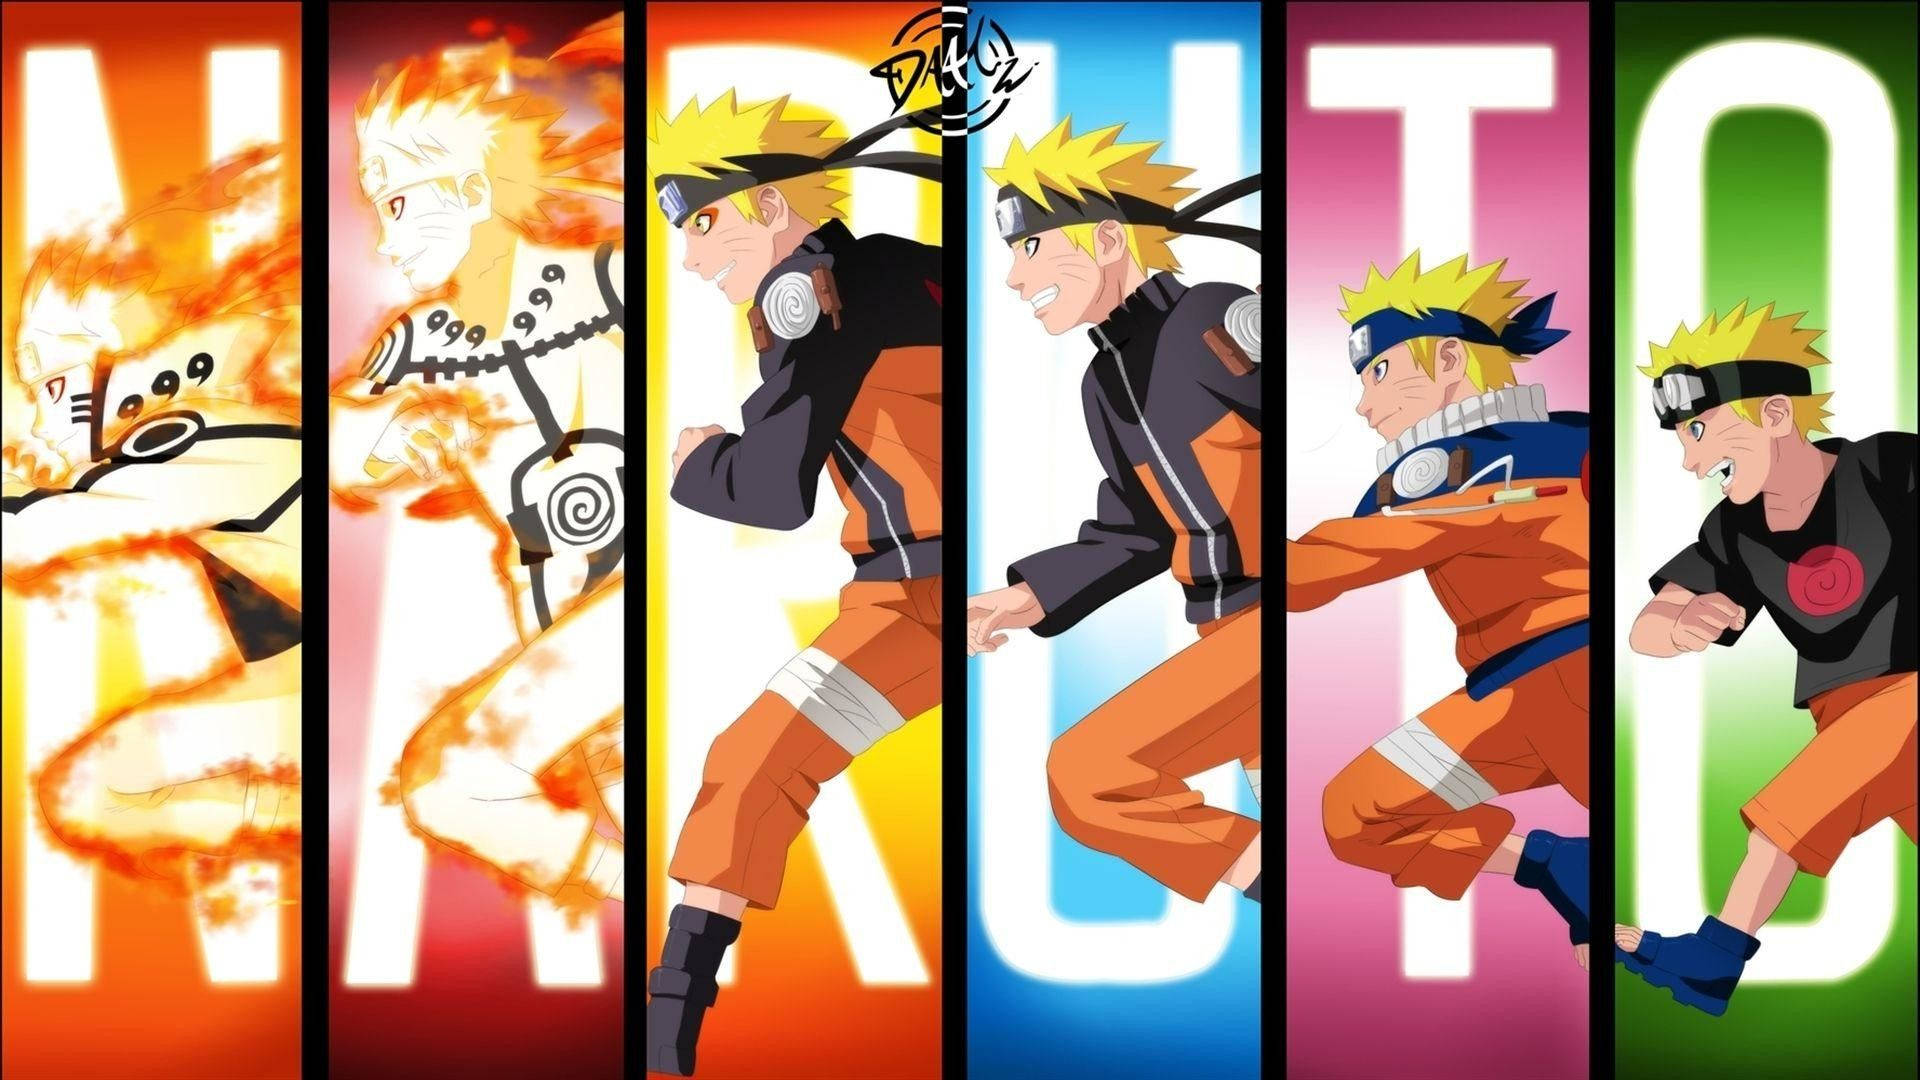 Narutoi Sin Slutliga Form. Wallpaper